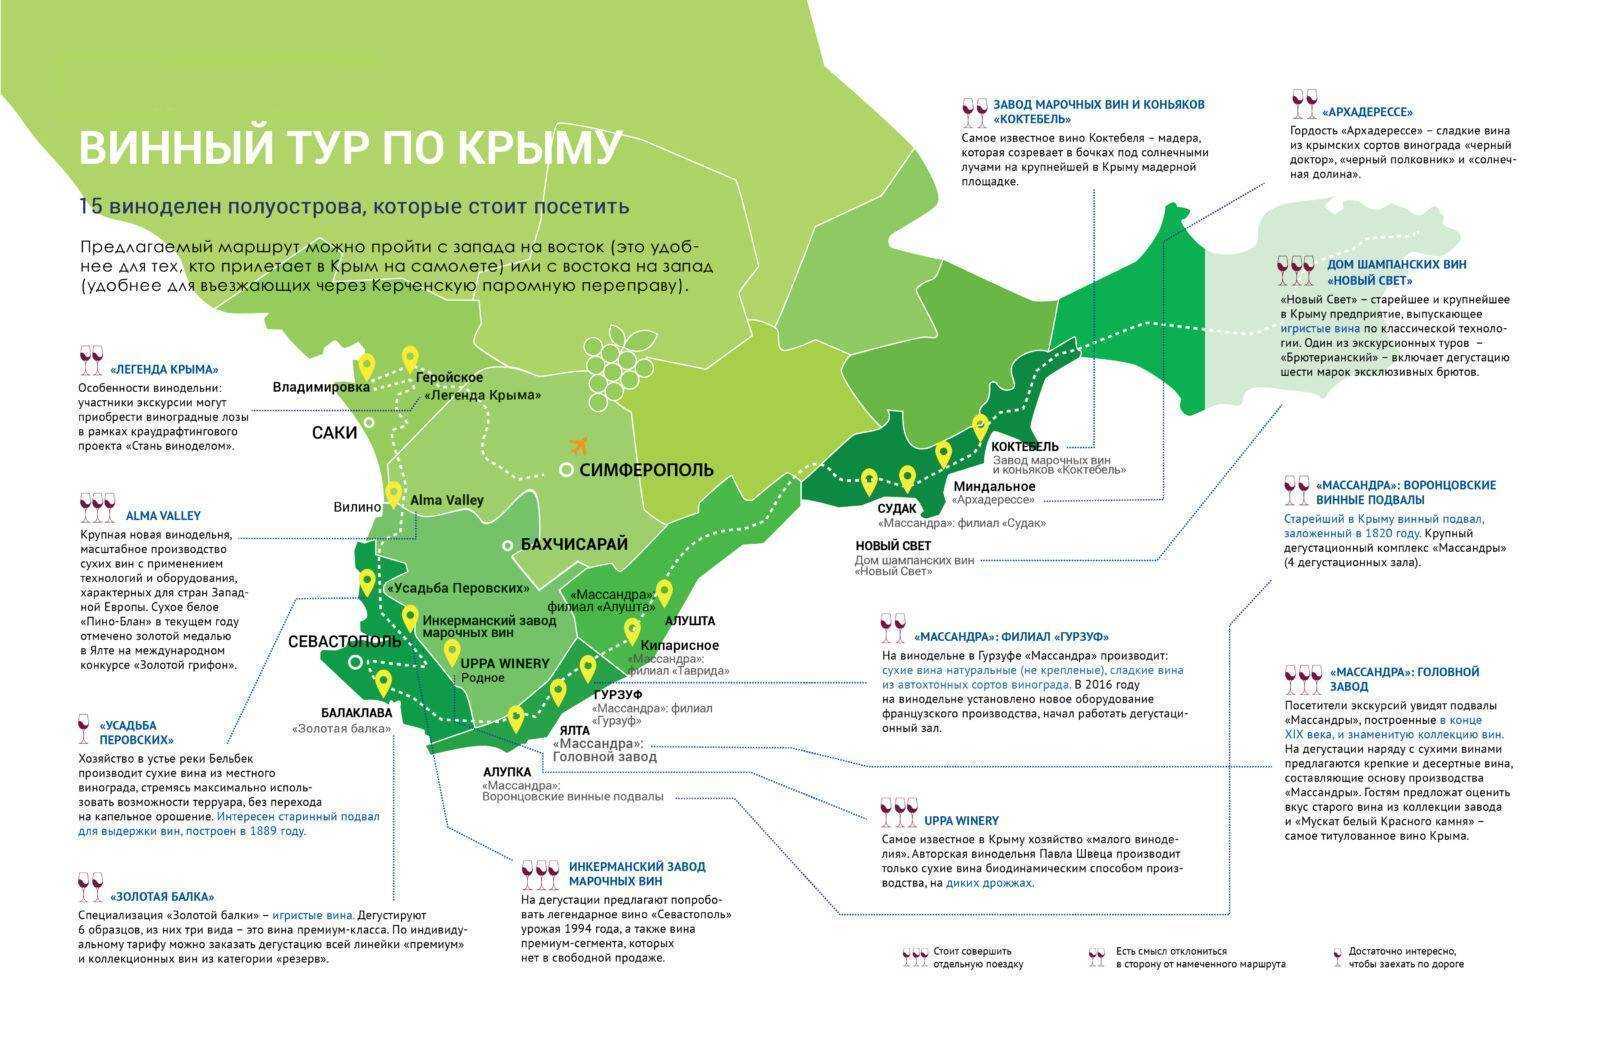 Аэропорты крыма: список, как называются, в каких городах осуществляются рейсы? (сезон 2020)